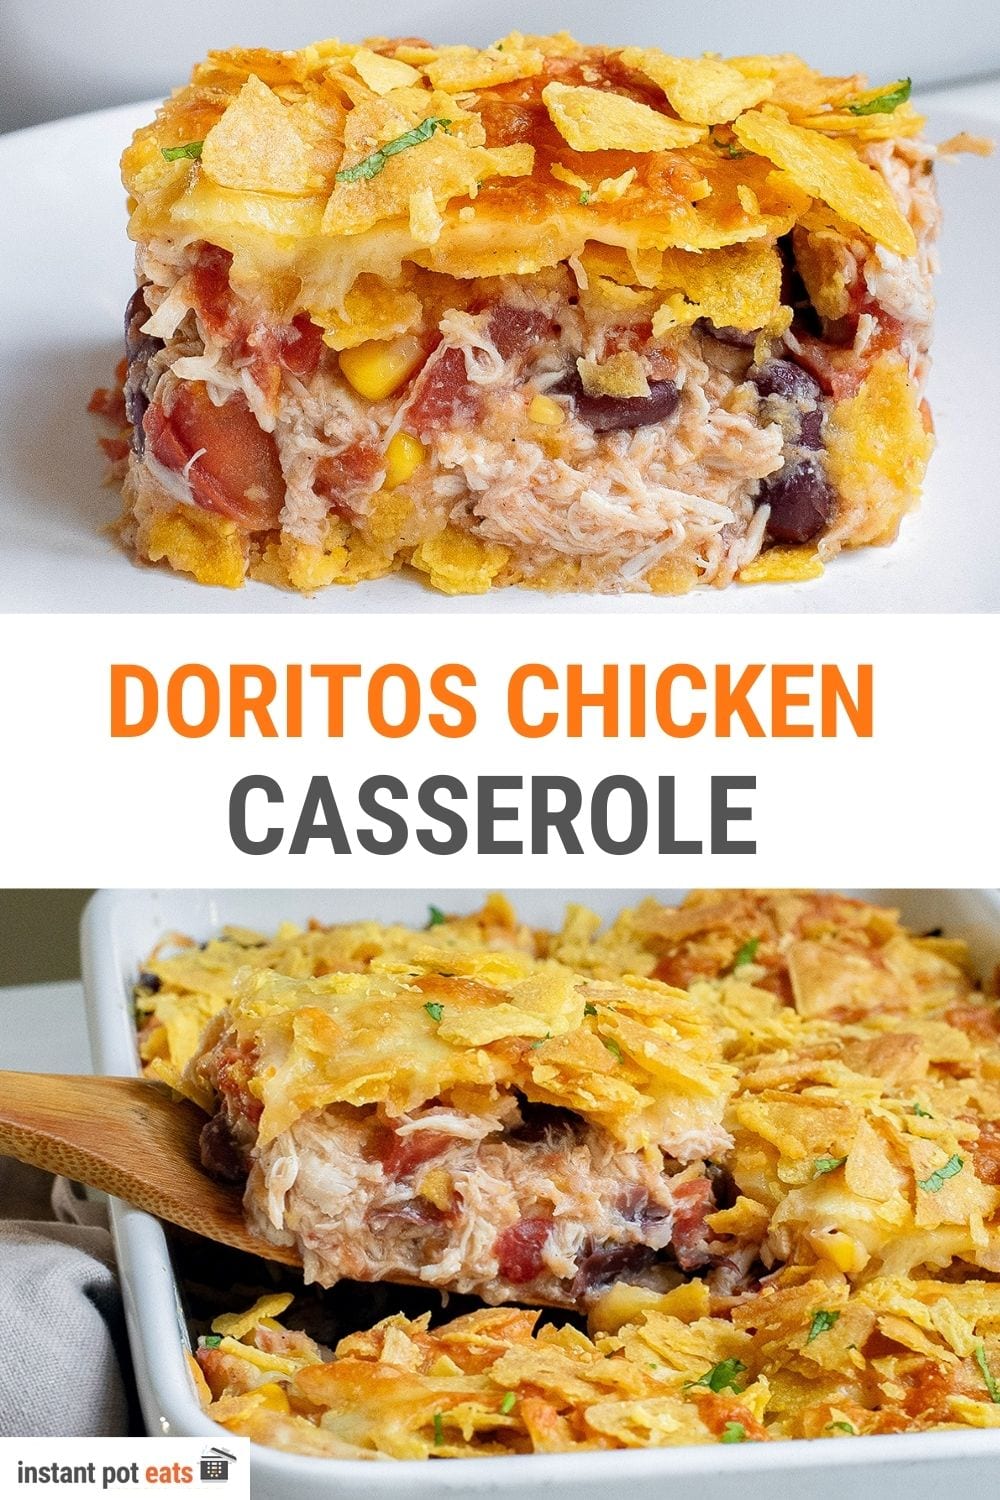 Doritos Chicken Casserole